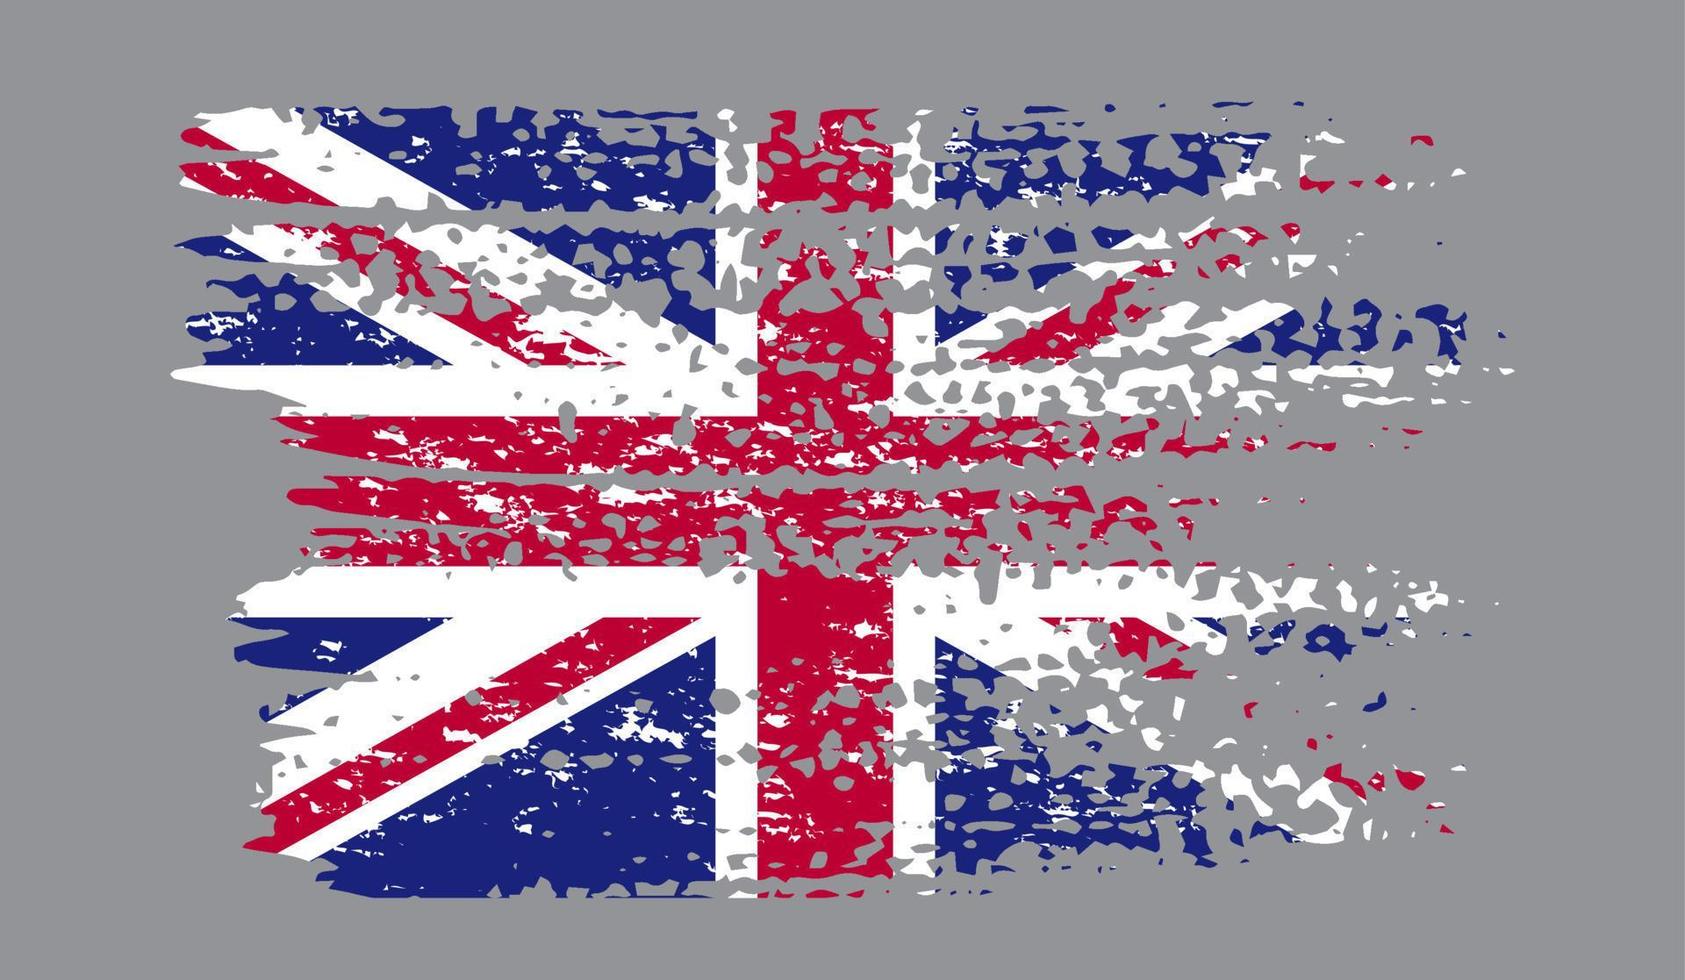 icône du drapeau de la grande-bretagne. Royaume-Uni modèle baner feuillage. illustration vectorielle. vecteur